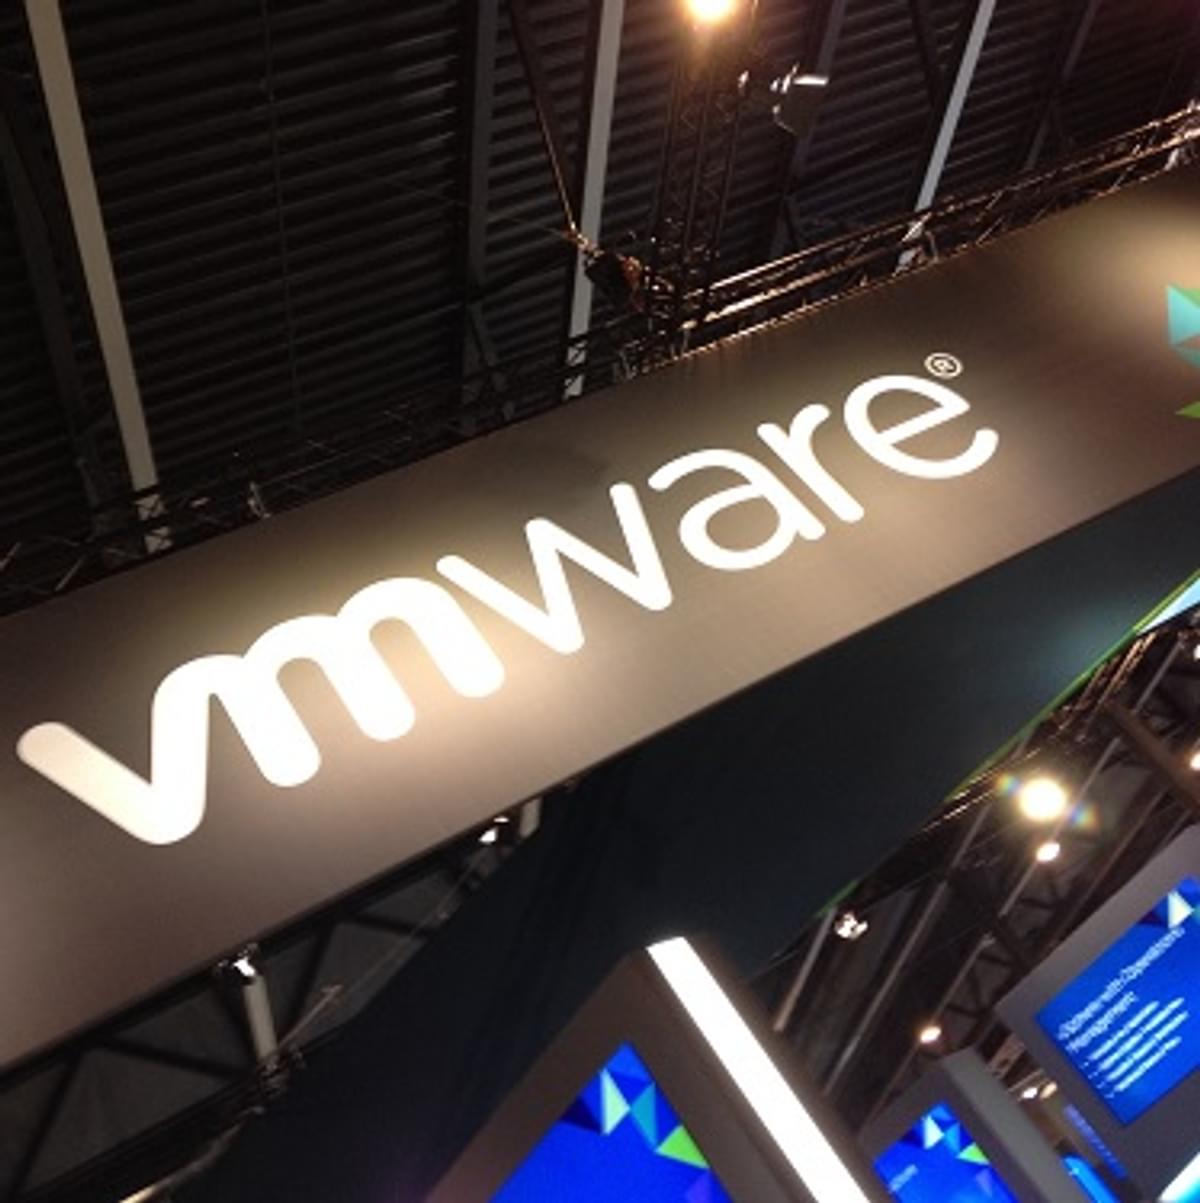 VMware Partner Connect-programma is vernieuwd image